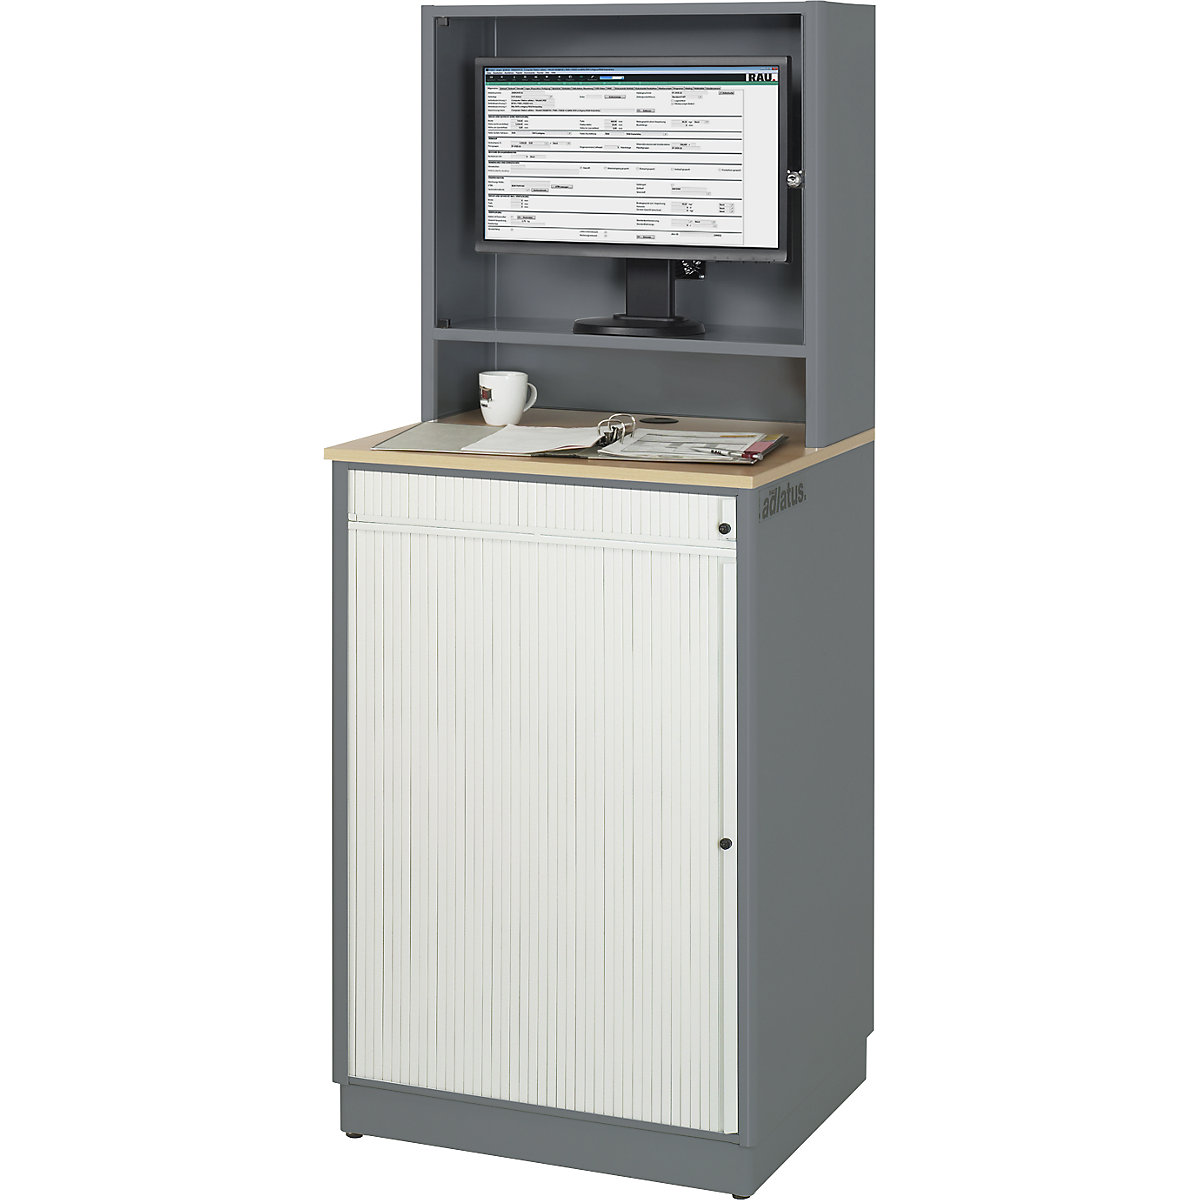 Počítačové pracoviště – RAU, v x š x h 1810 x 720 x 660 mm, s krytem pro monitor, antracitová metalíza / enciánová modrá-13